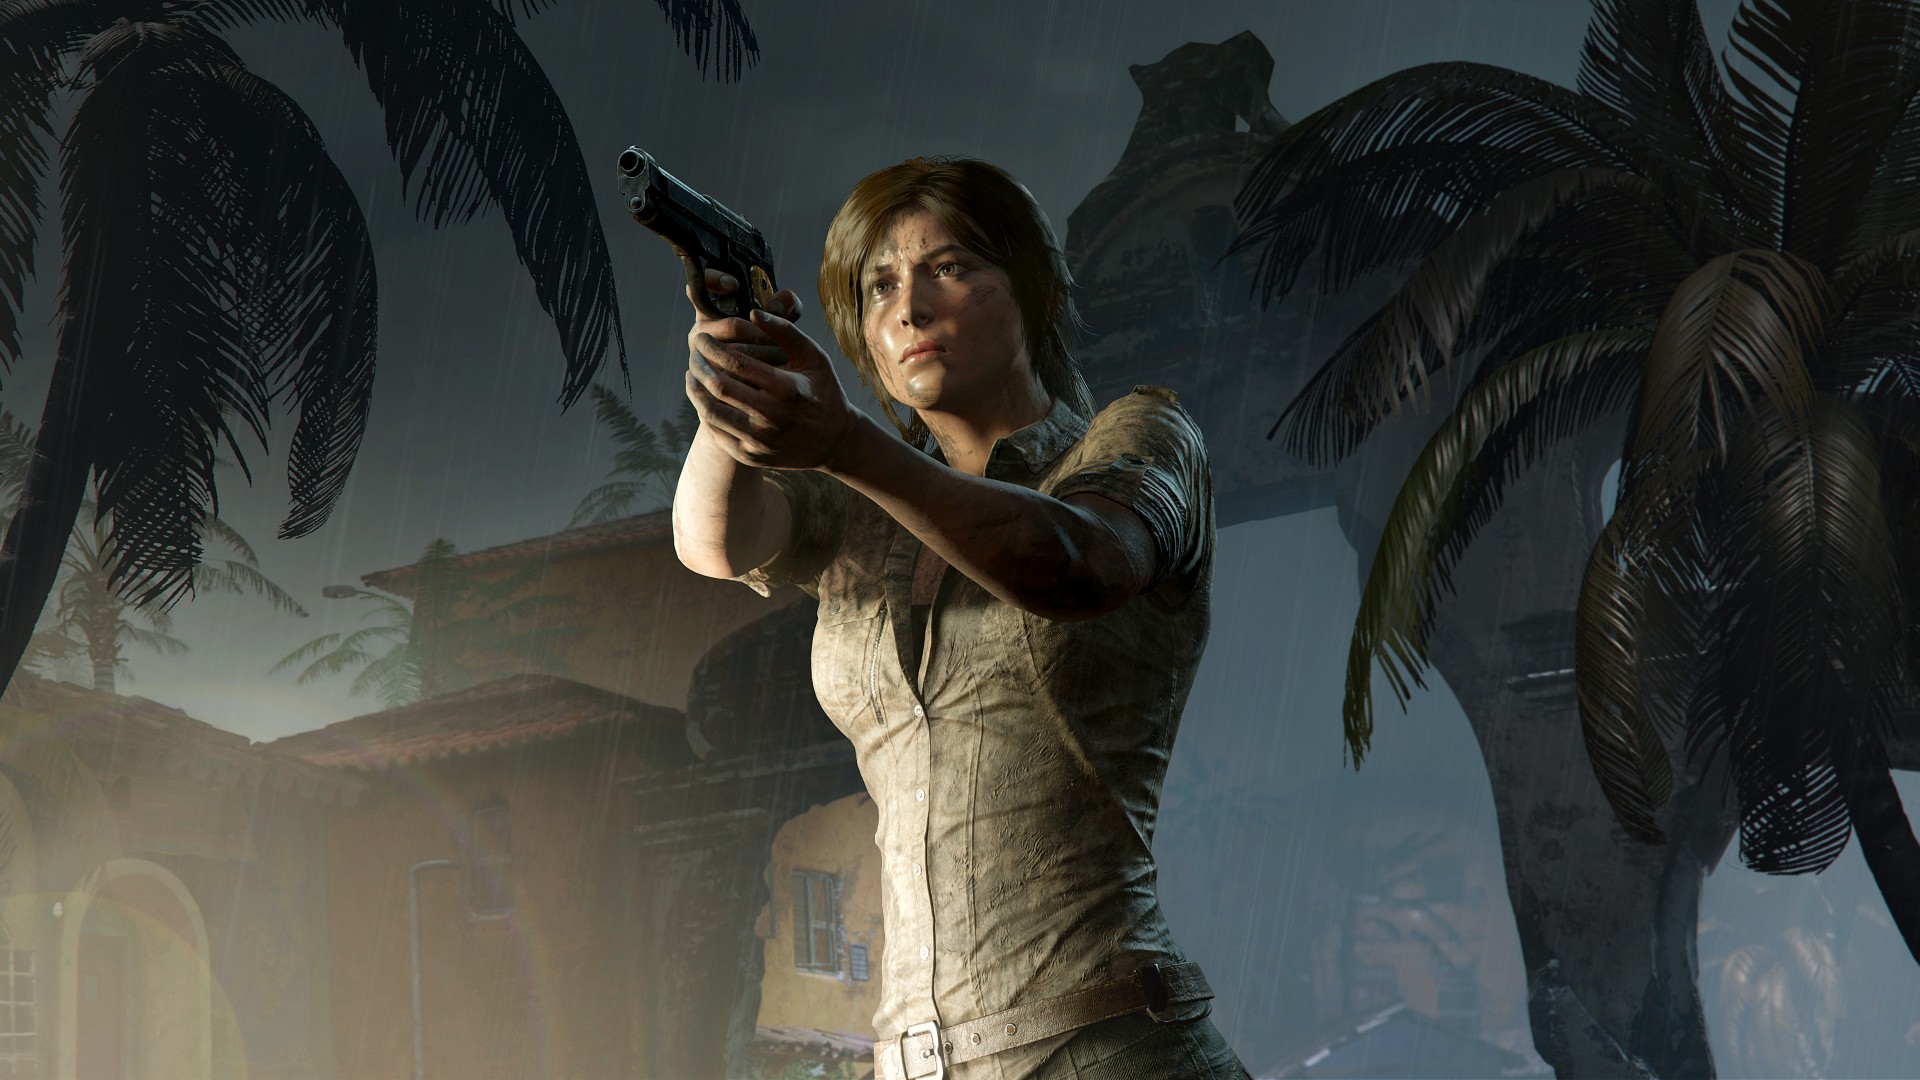 ผู้กำกับ Days Gone เข้ามาร่วม Crystal Dynamics พัฒนา Tomb Raider ภาคใหม่